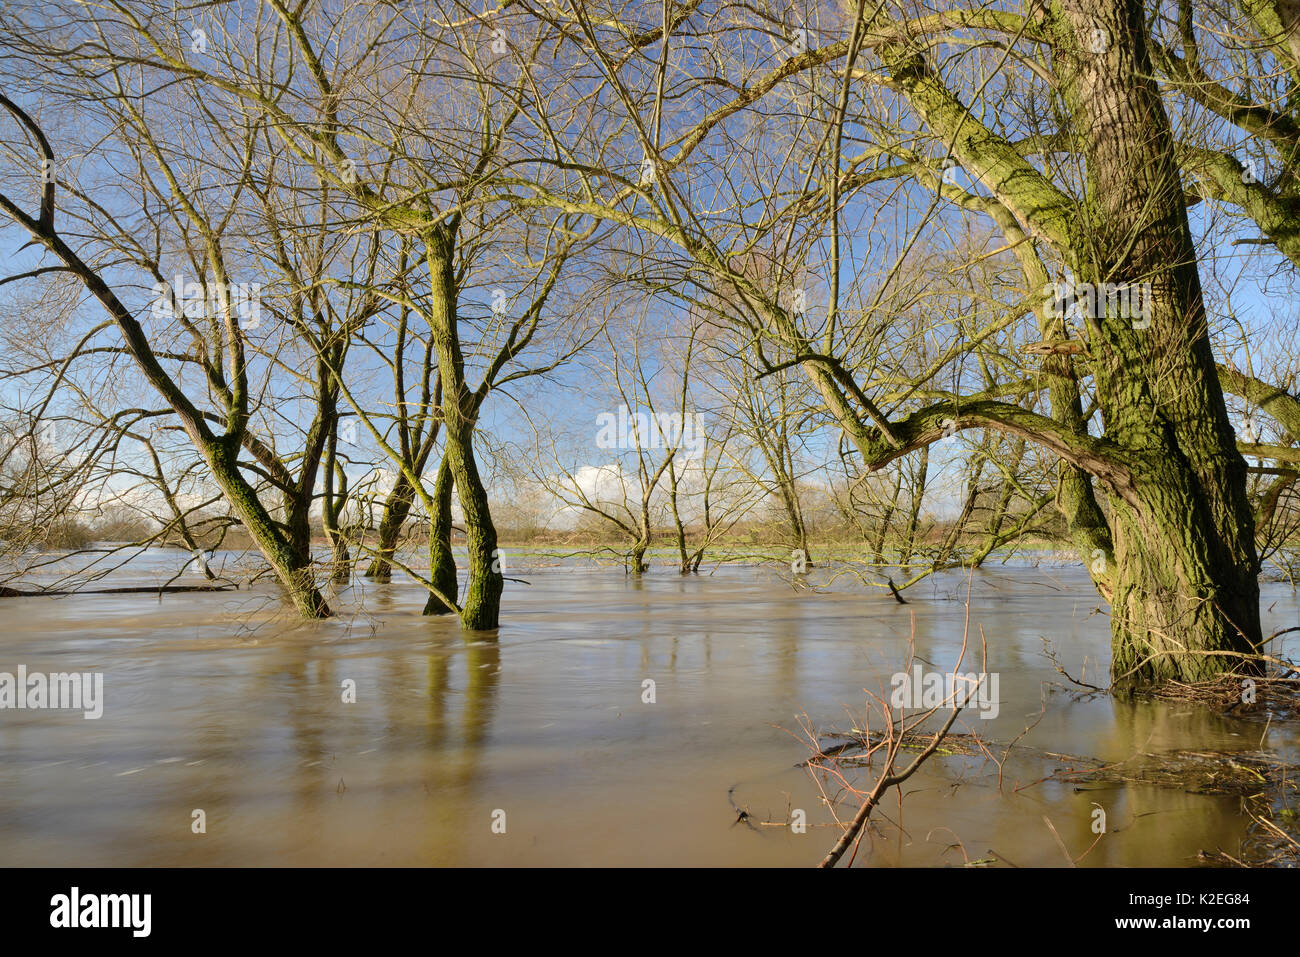 Weiden (Salix sp.) Fransen am Fluss Avon teilweise nach Wochen der Regen überschwemmt es verursachte seinen Banken, Lacock, Wiltshire, UK, Februar 2014 zu platzen. Stockfoto